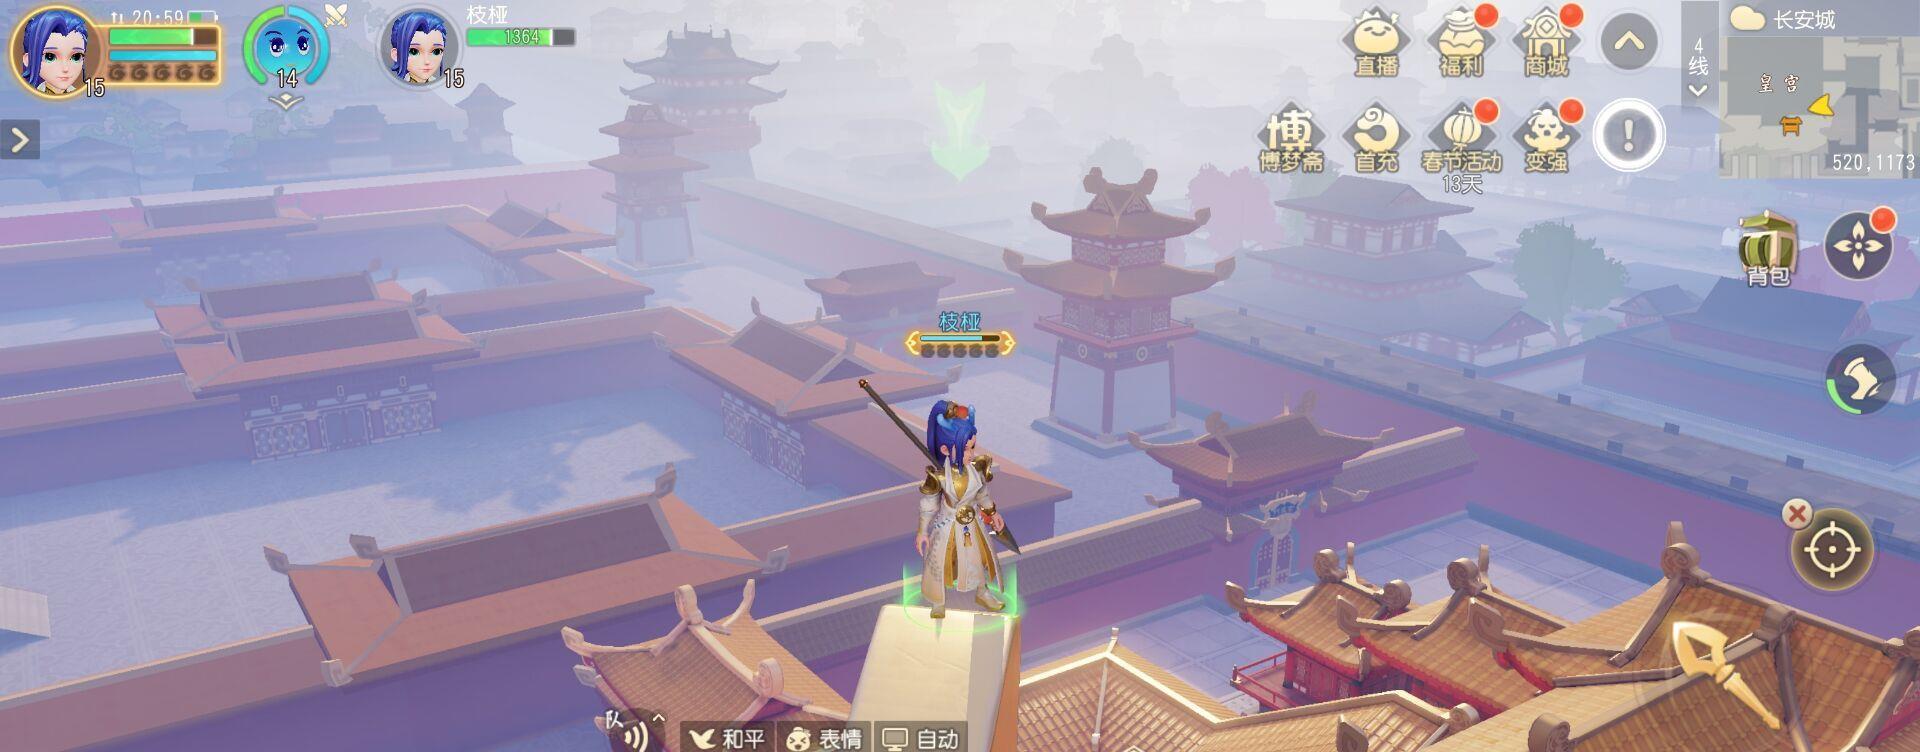 《梦幻西游三维版》:长安城有怎样的风景?楼顶才看得真切